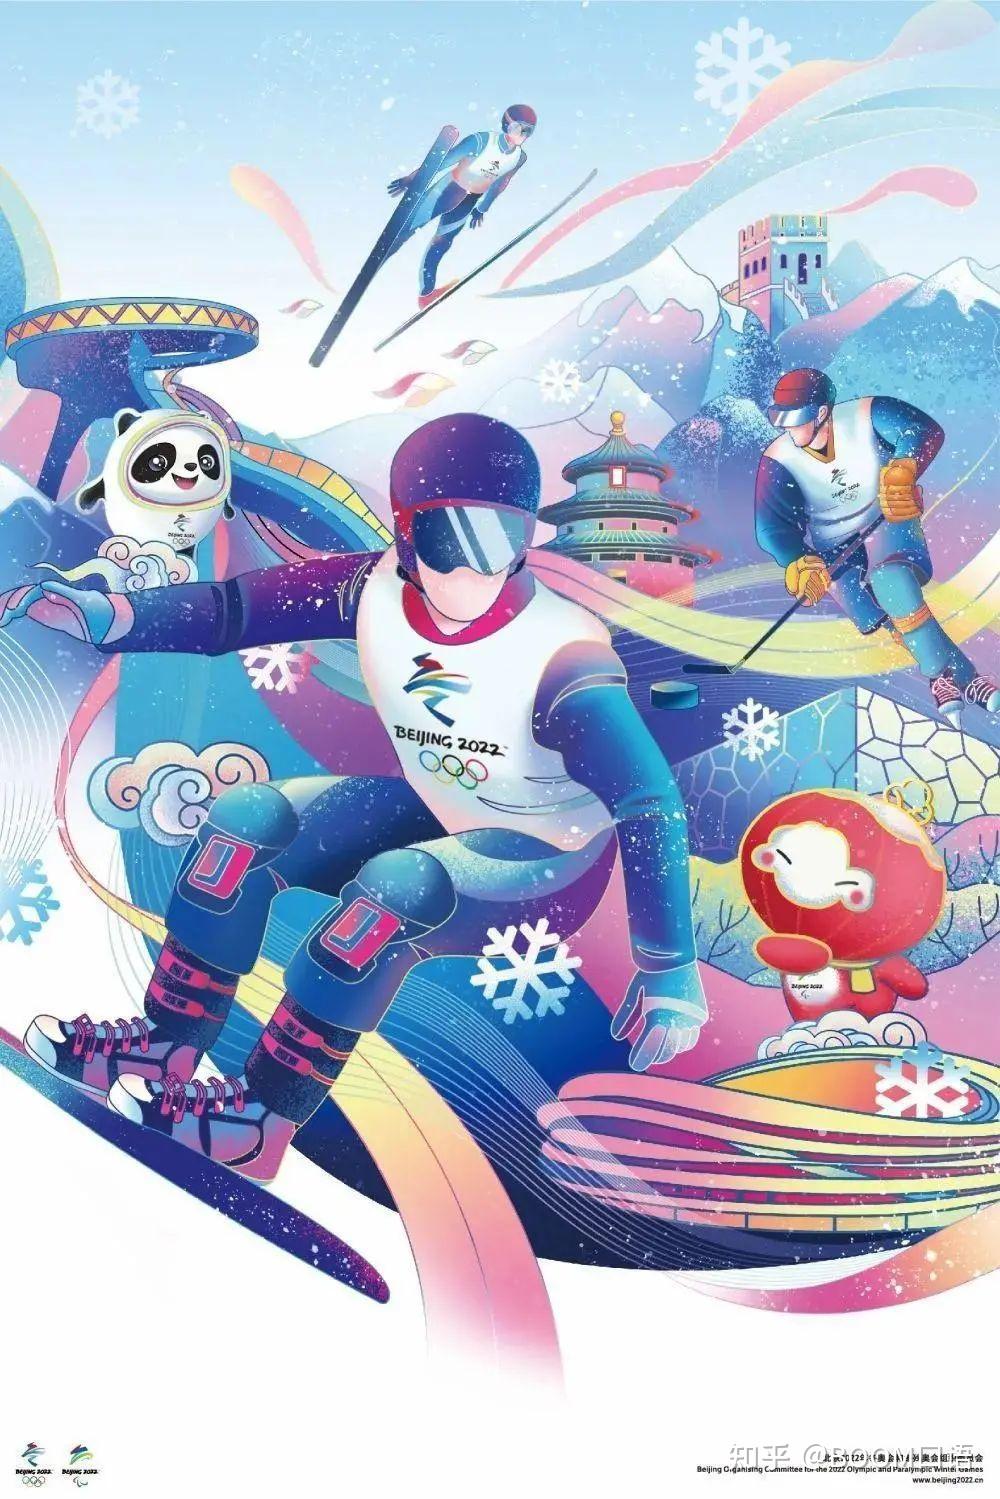 符号的)海报由北京2022年冬奥会和残奥会组委会于2020年7月设计,由三